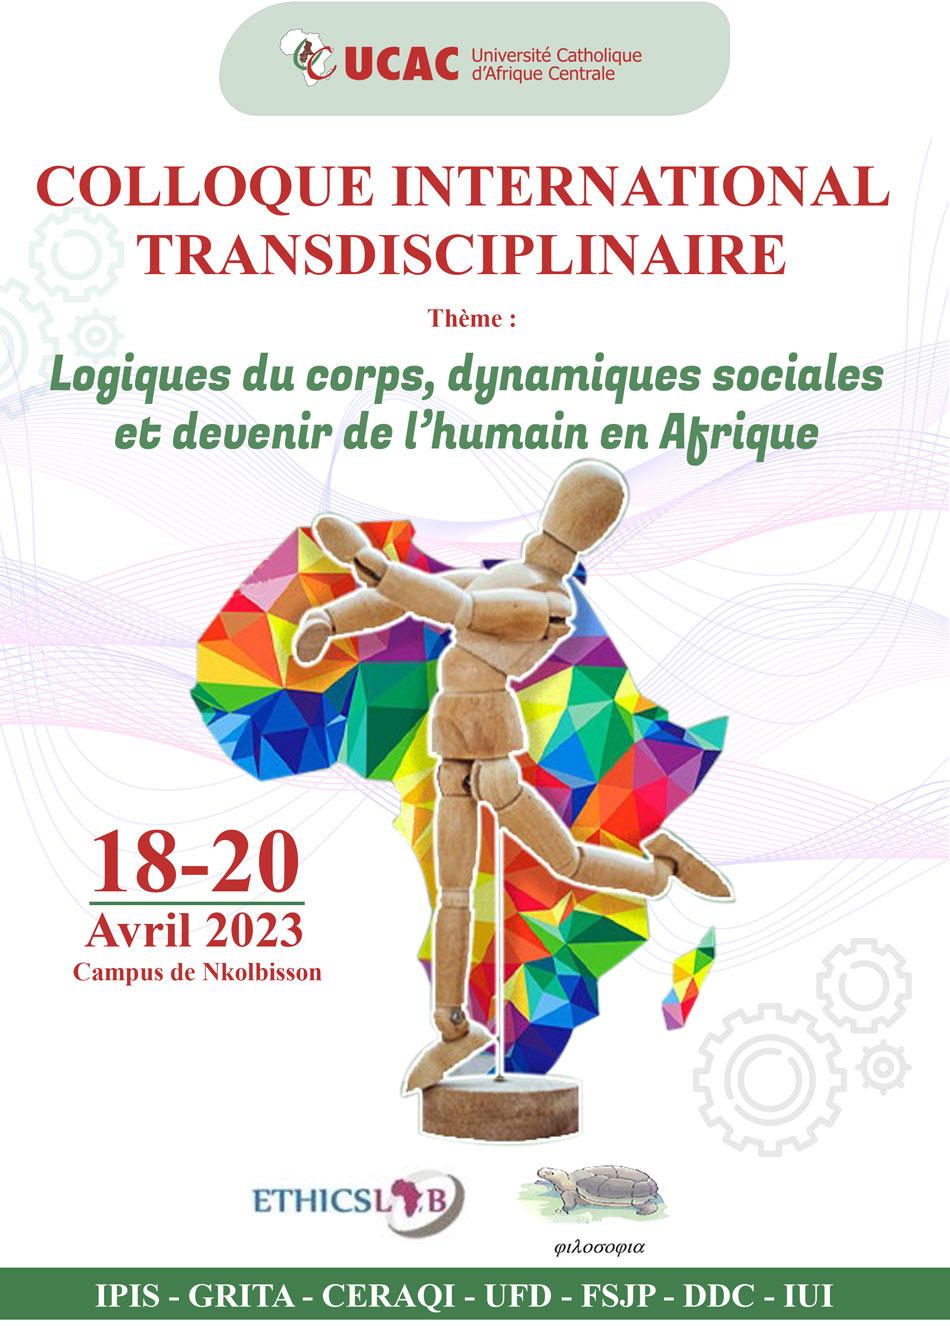 Colloque International Transdisciplinaire - Logiques du corps, dynamiques sociales et devenir de l’humain en Afrique